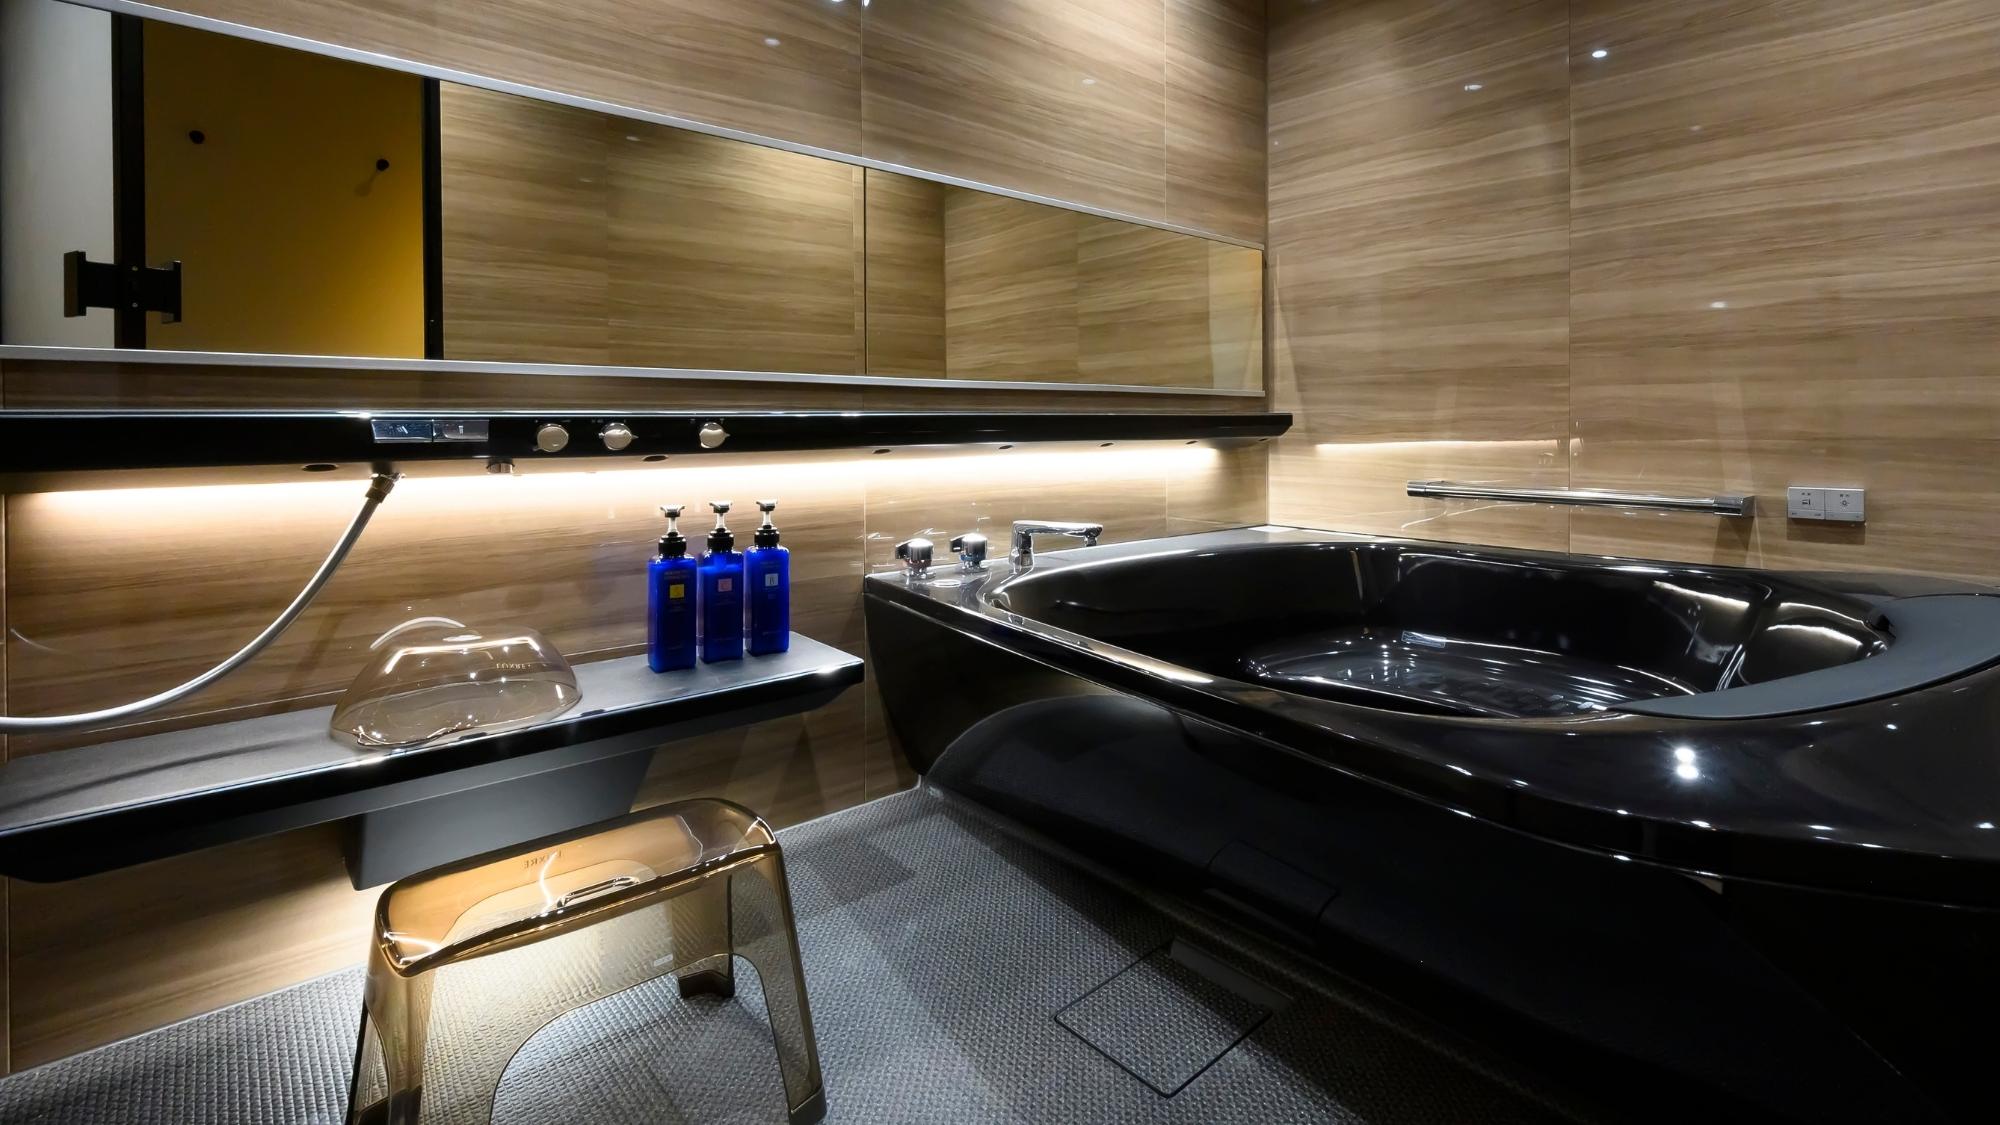 【ジャパニーズスイート-奏kanade】黒のバスタブがシックな雰囲気の客室内風呂。